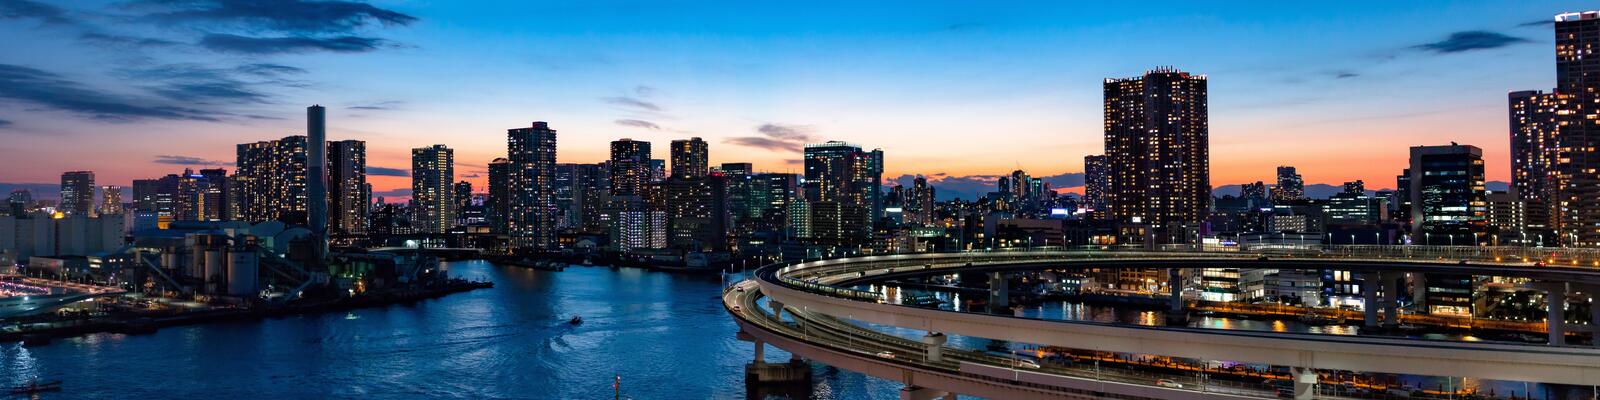 Бесплатное фото Панорамная фотография города Токио